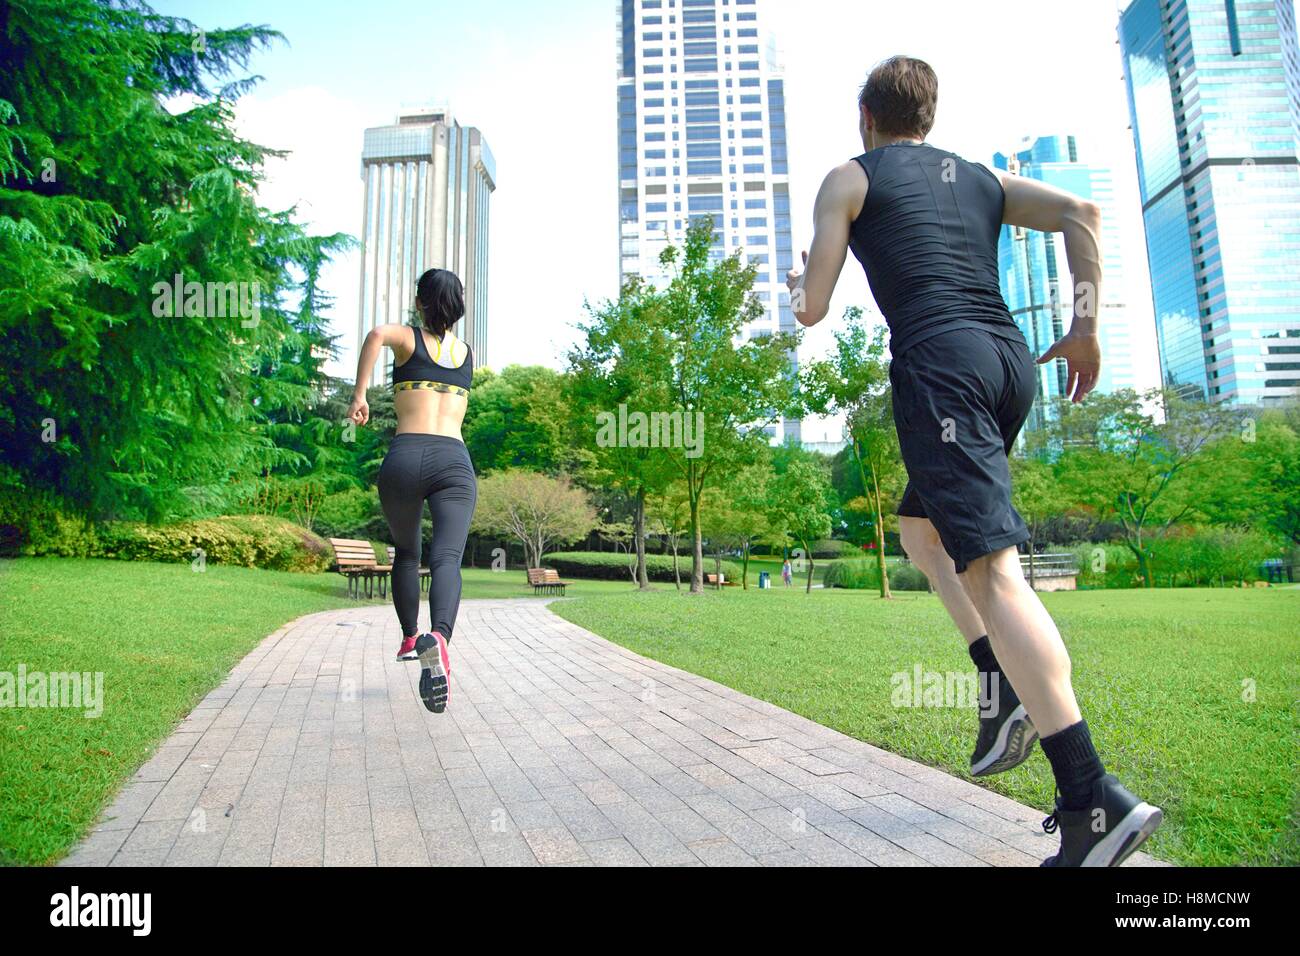 Gesunde Sportler trail running Leben ein aktives Leben. Stockfoto